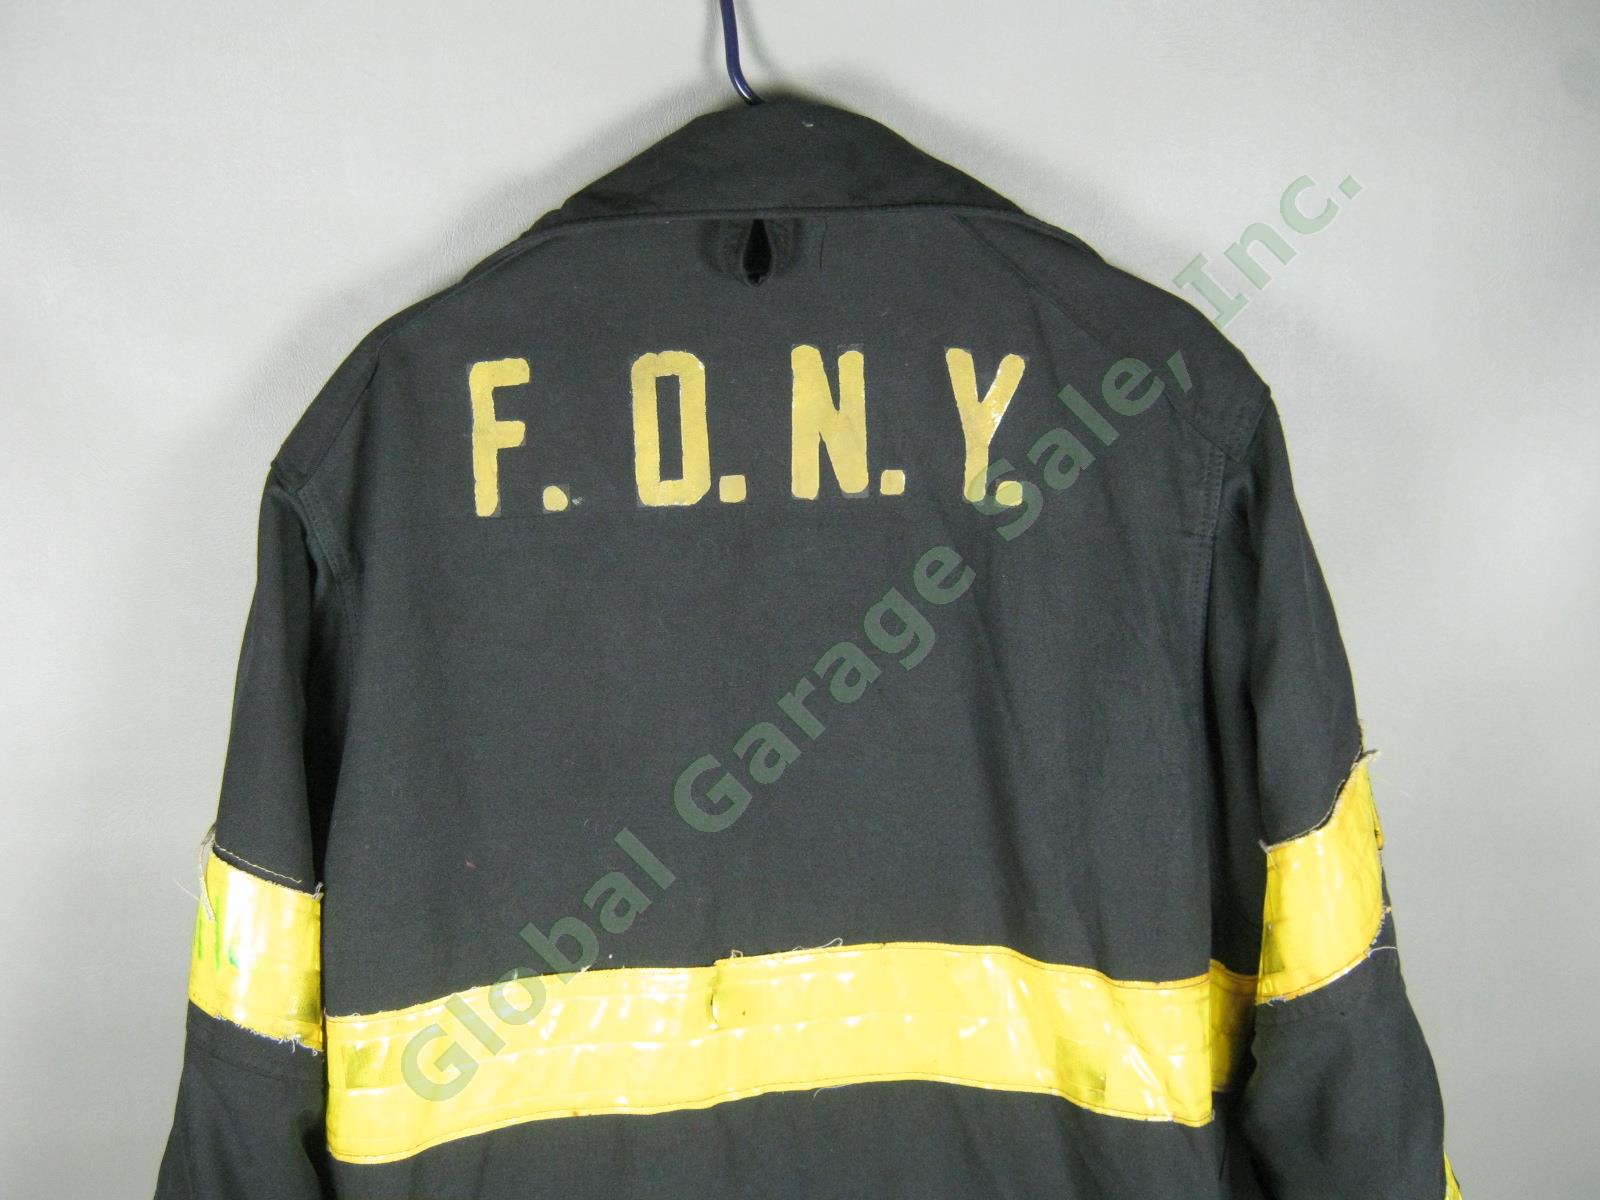 Vtg Janesville FDNY NYC Fire Dept Summer Firefighter Turnout Bunker Jacket NR! 1